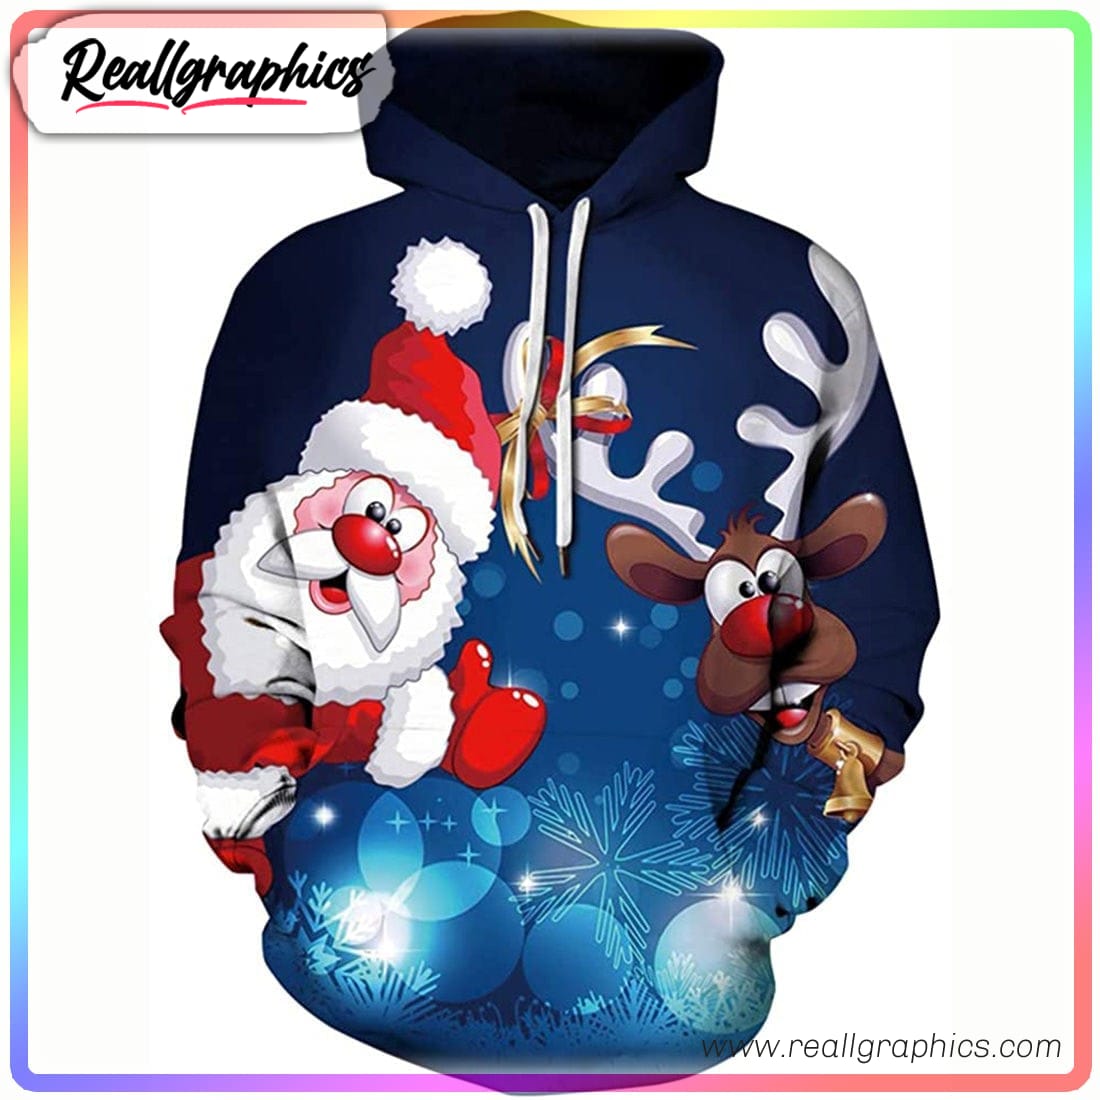 funny santa reindeer 3d printed hoodie